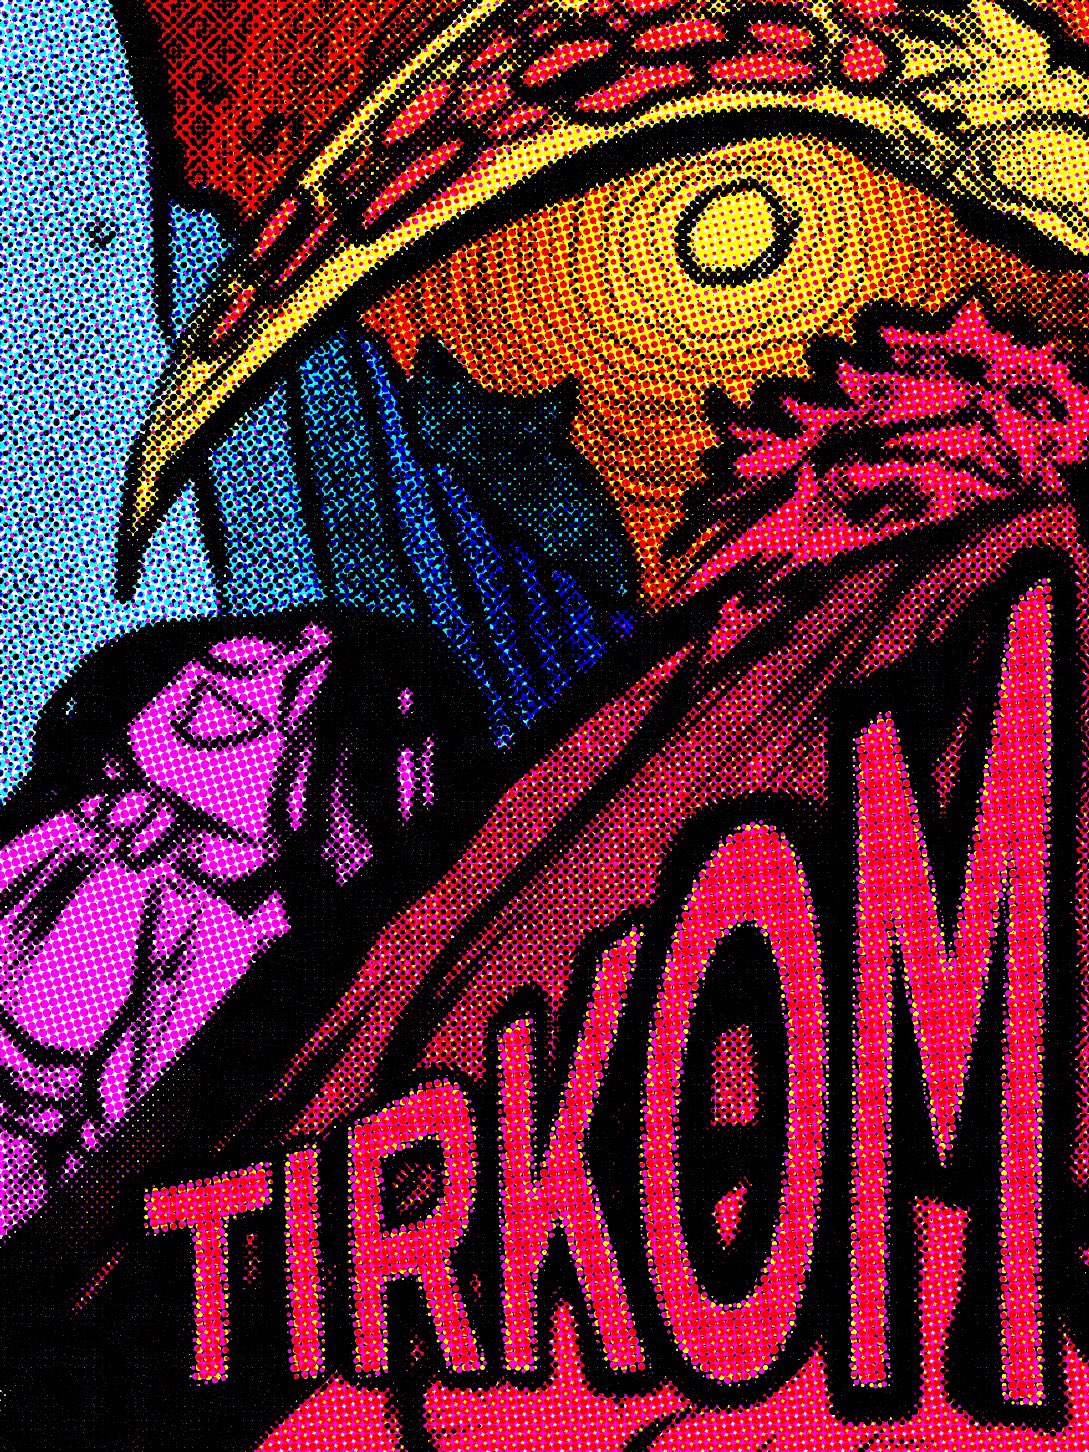 Tirkom - chapter 17.82 - #1